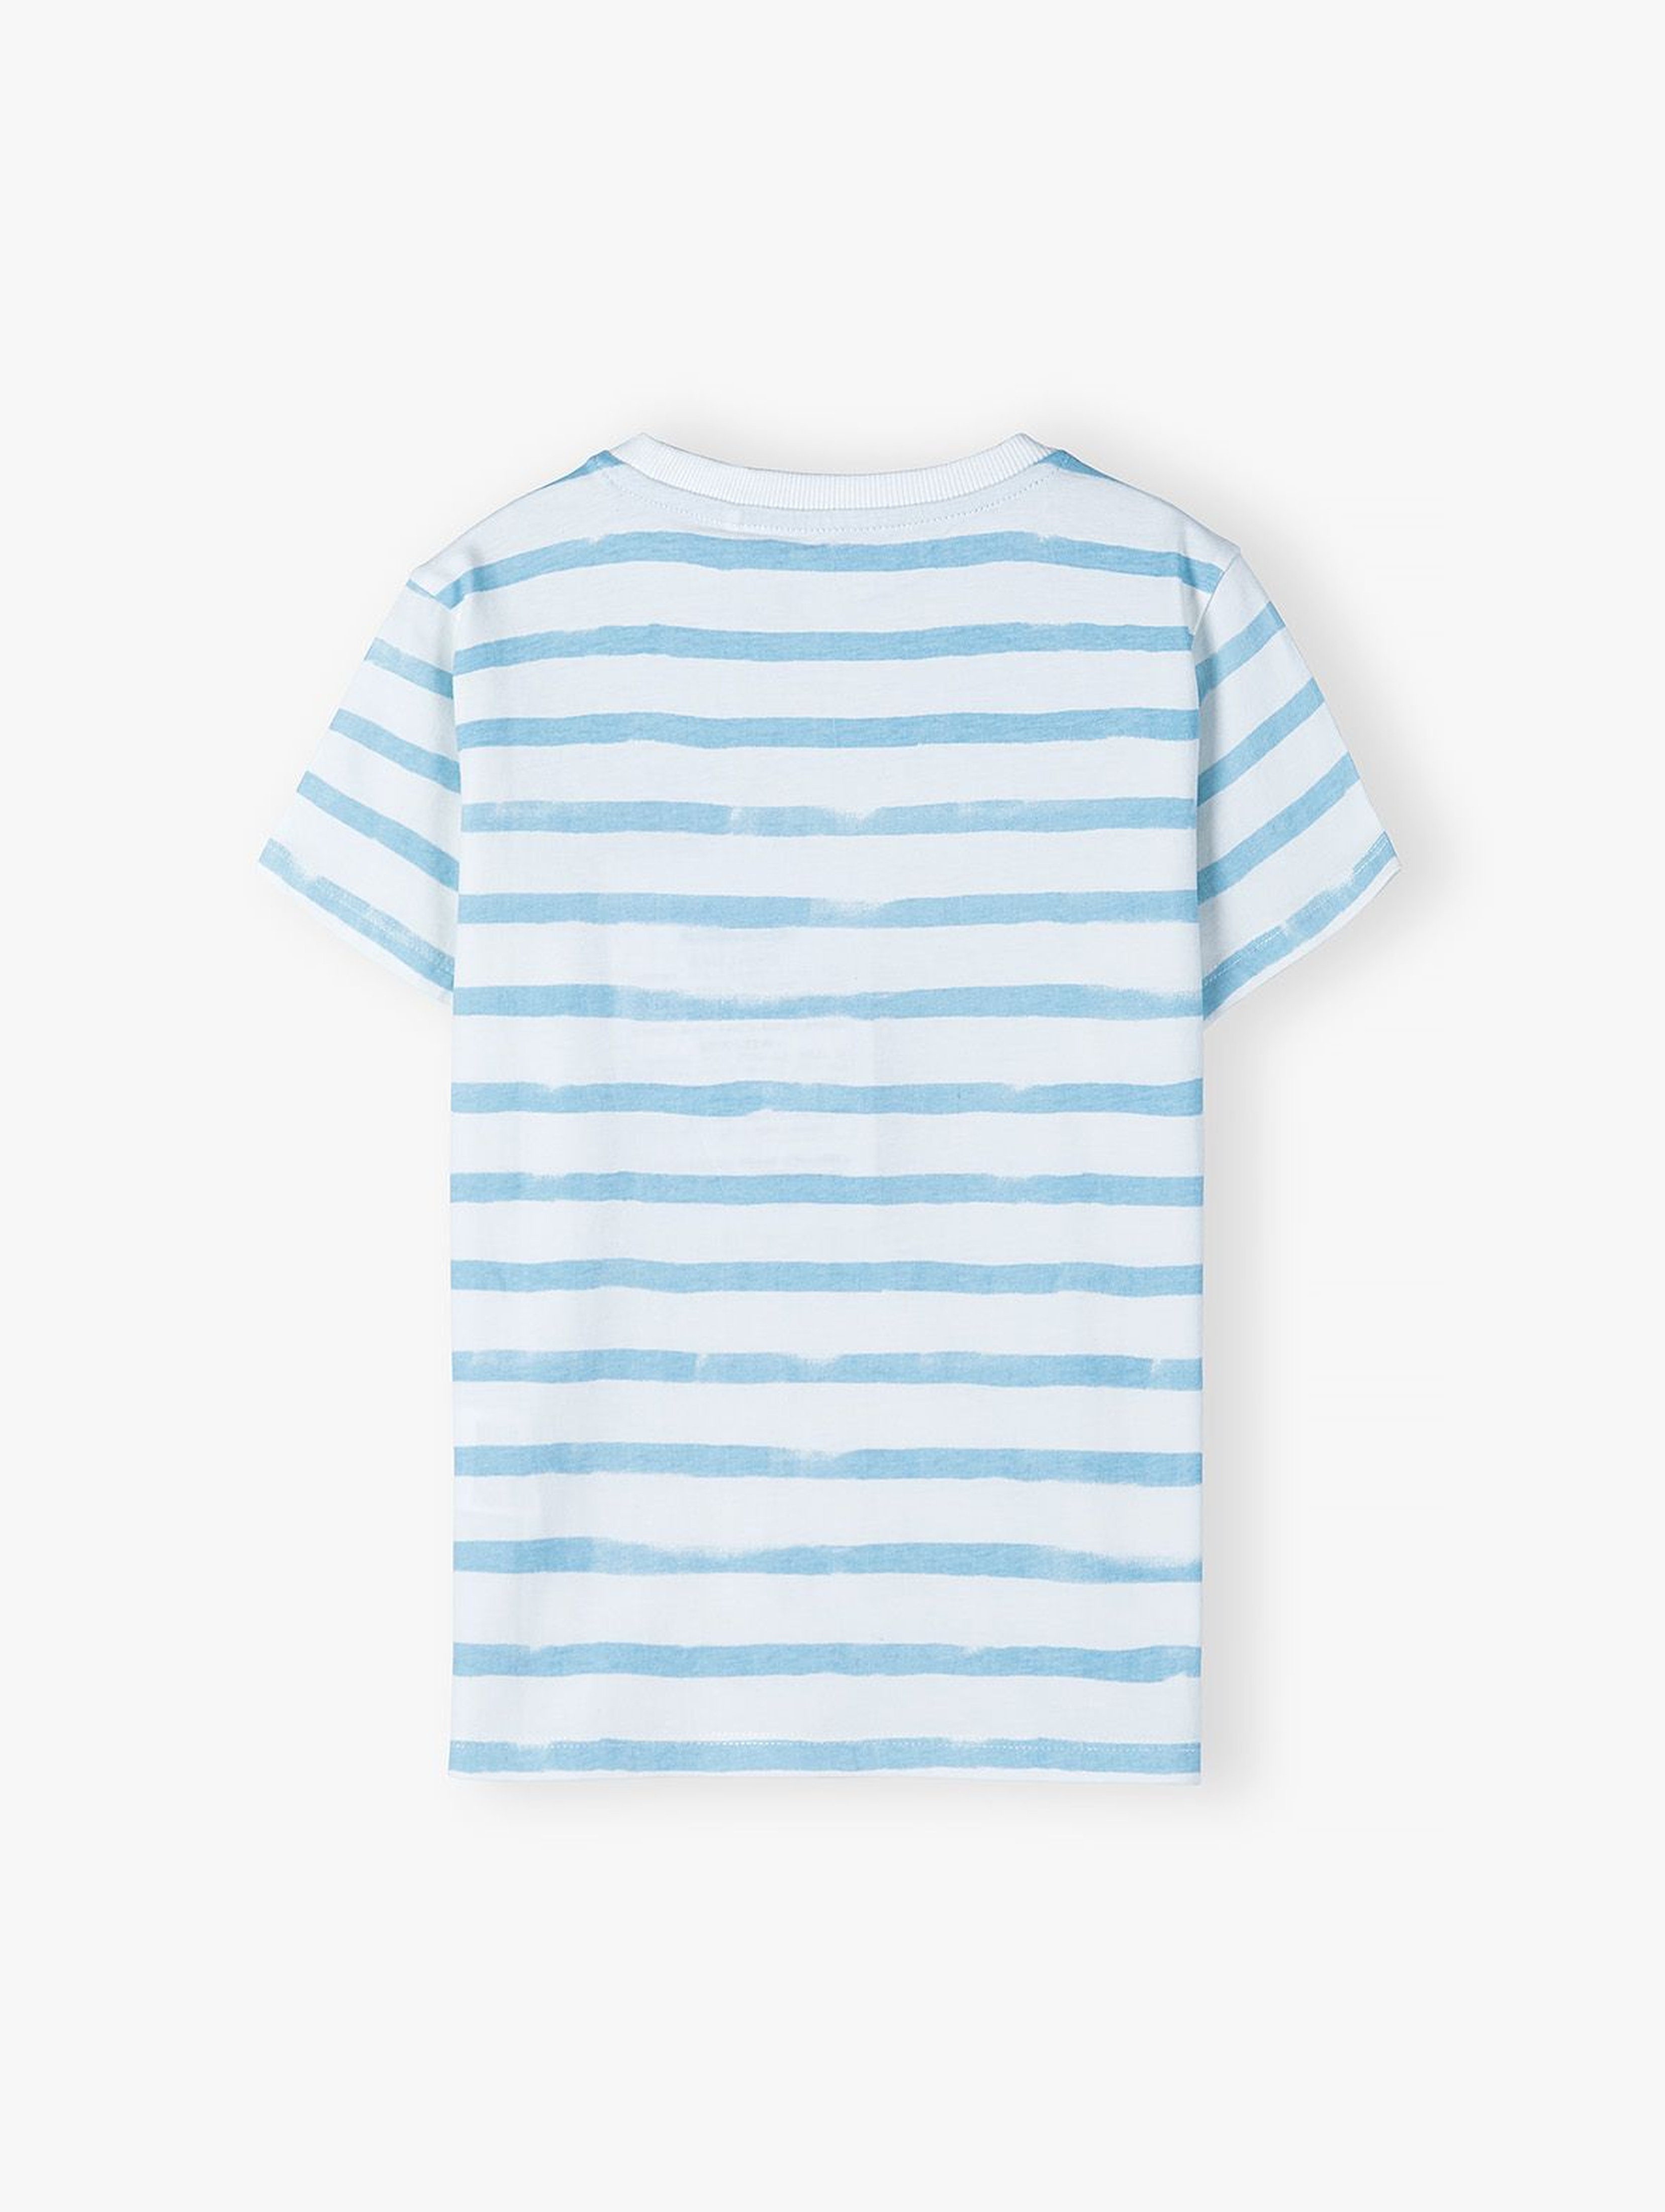 Dzianinowy T-shirt w błękito - białe pasy